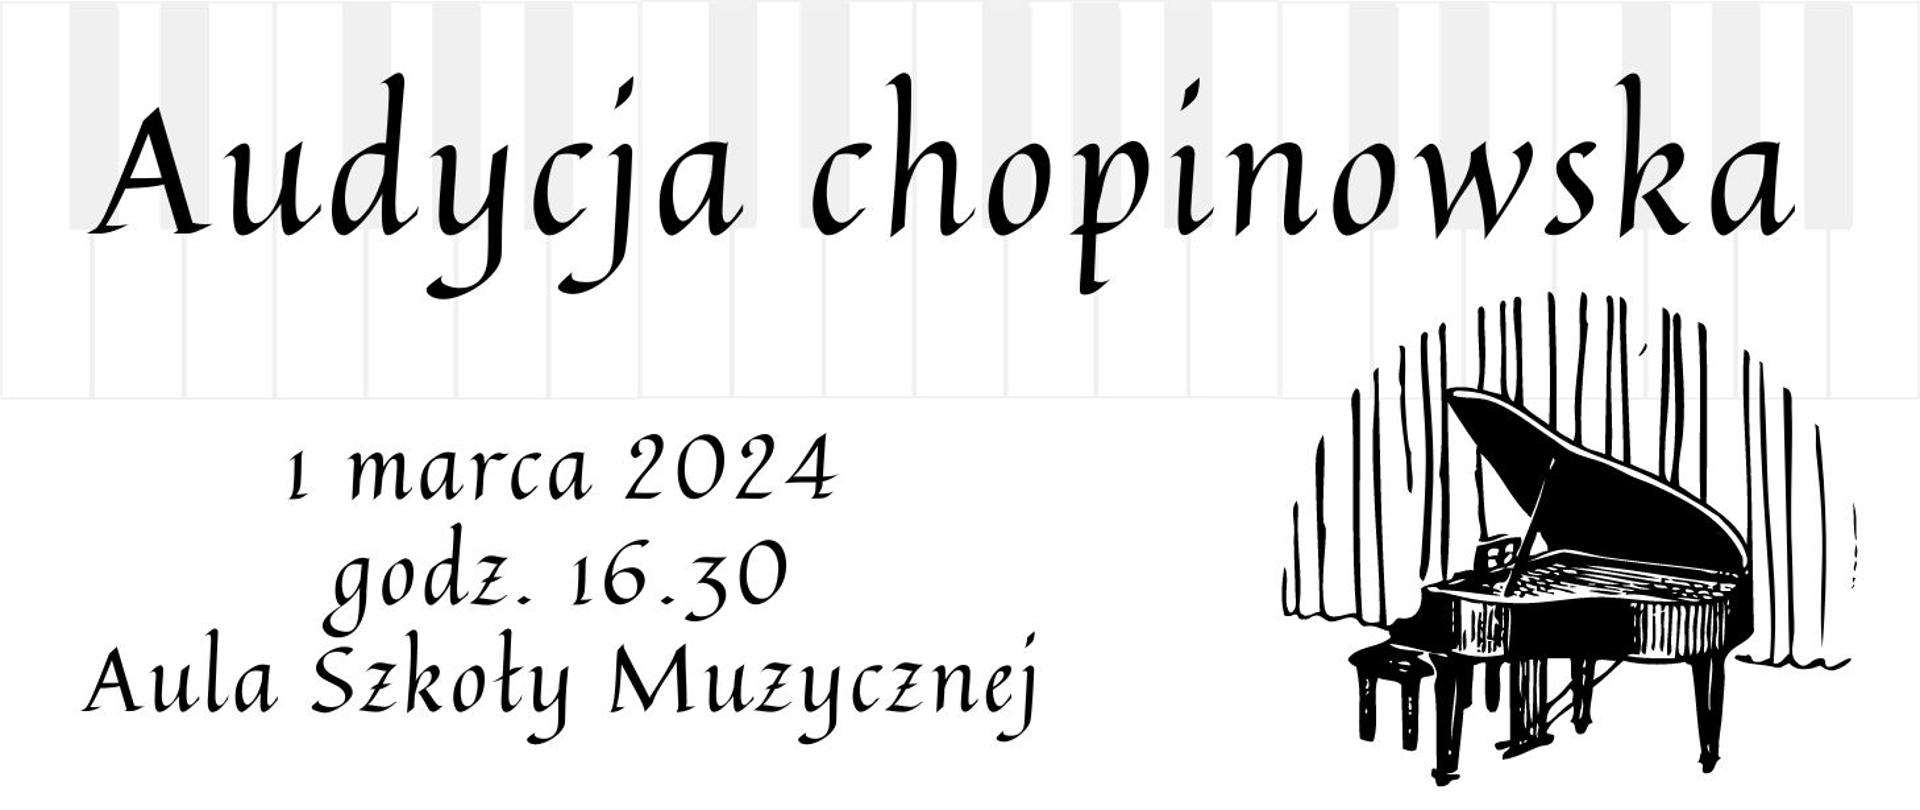 Plakat Audycja chopinowska, plakat przedstawia fortepian i ogłoszenie